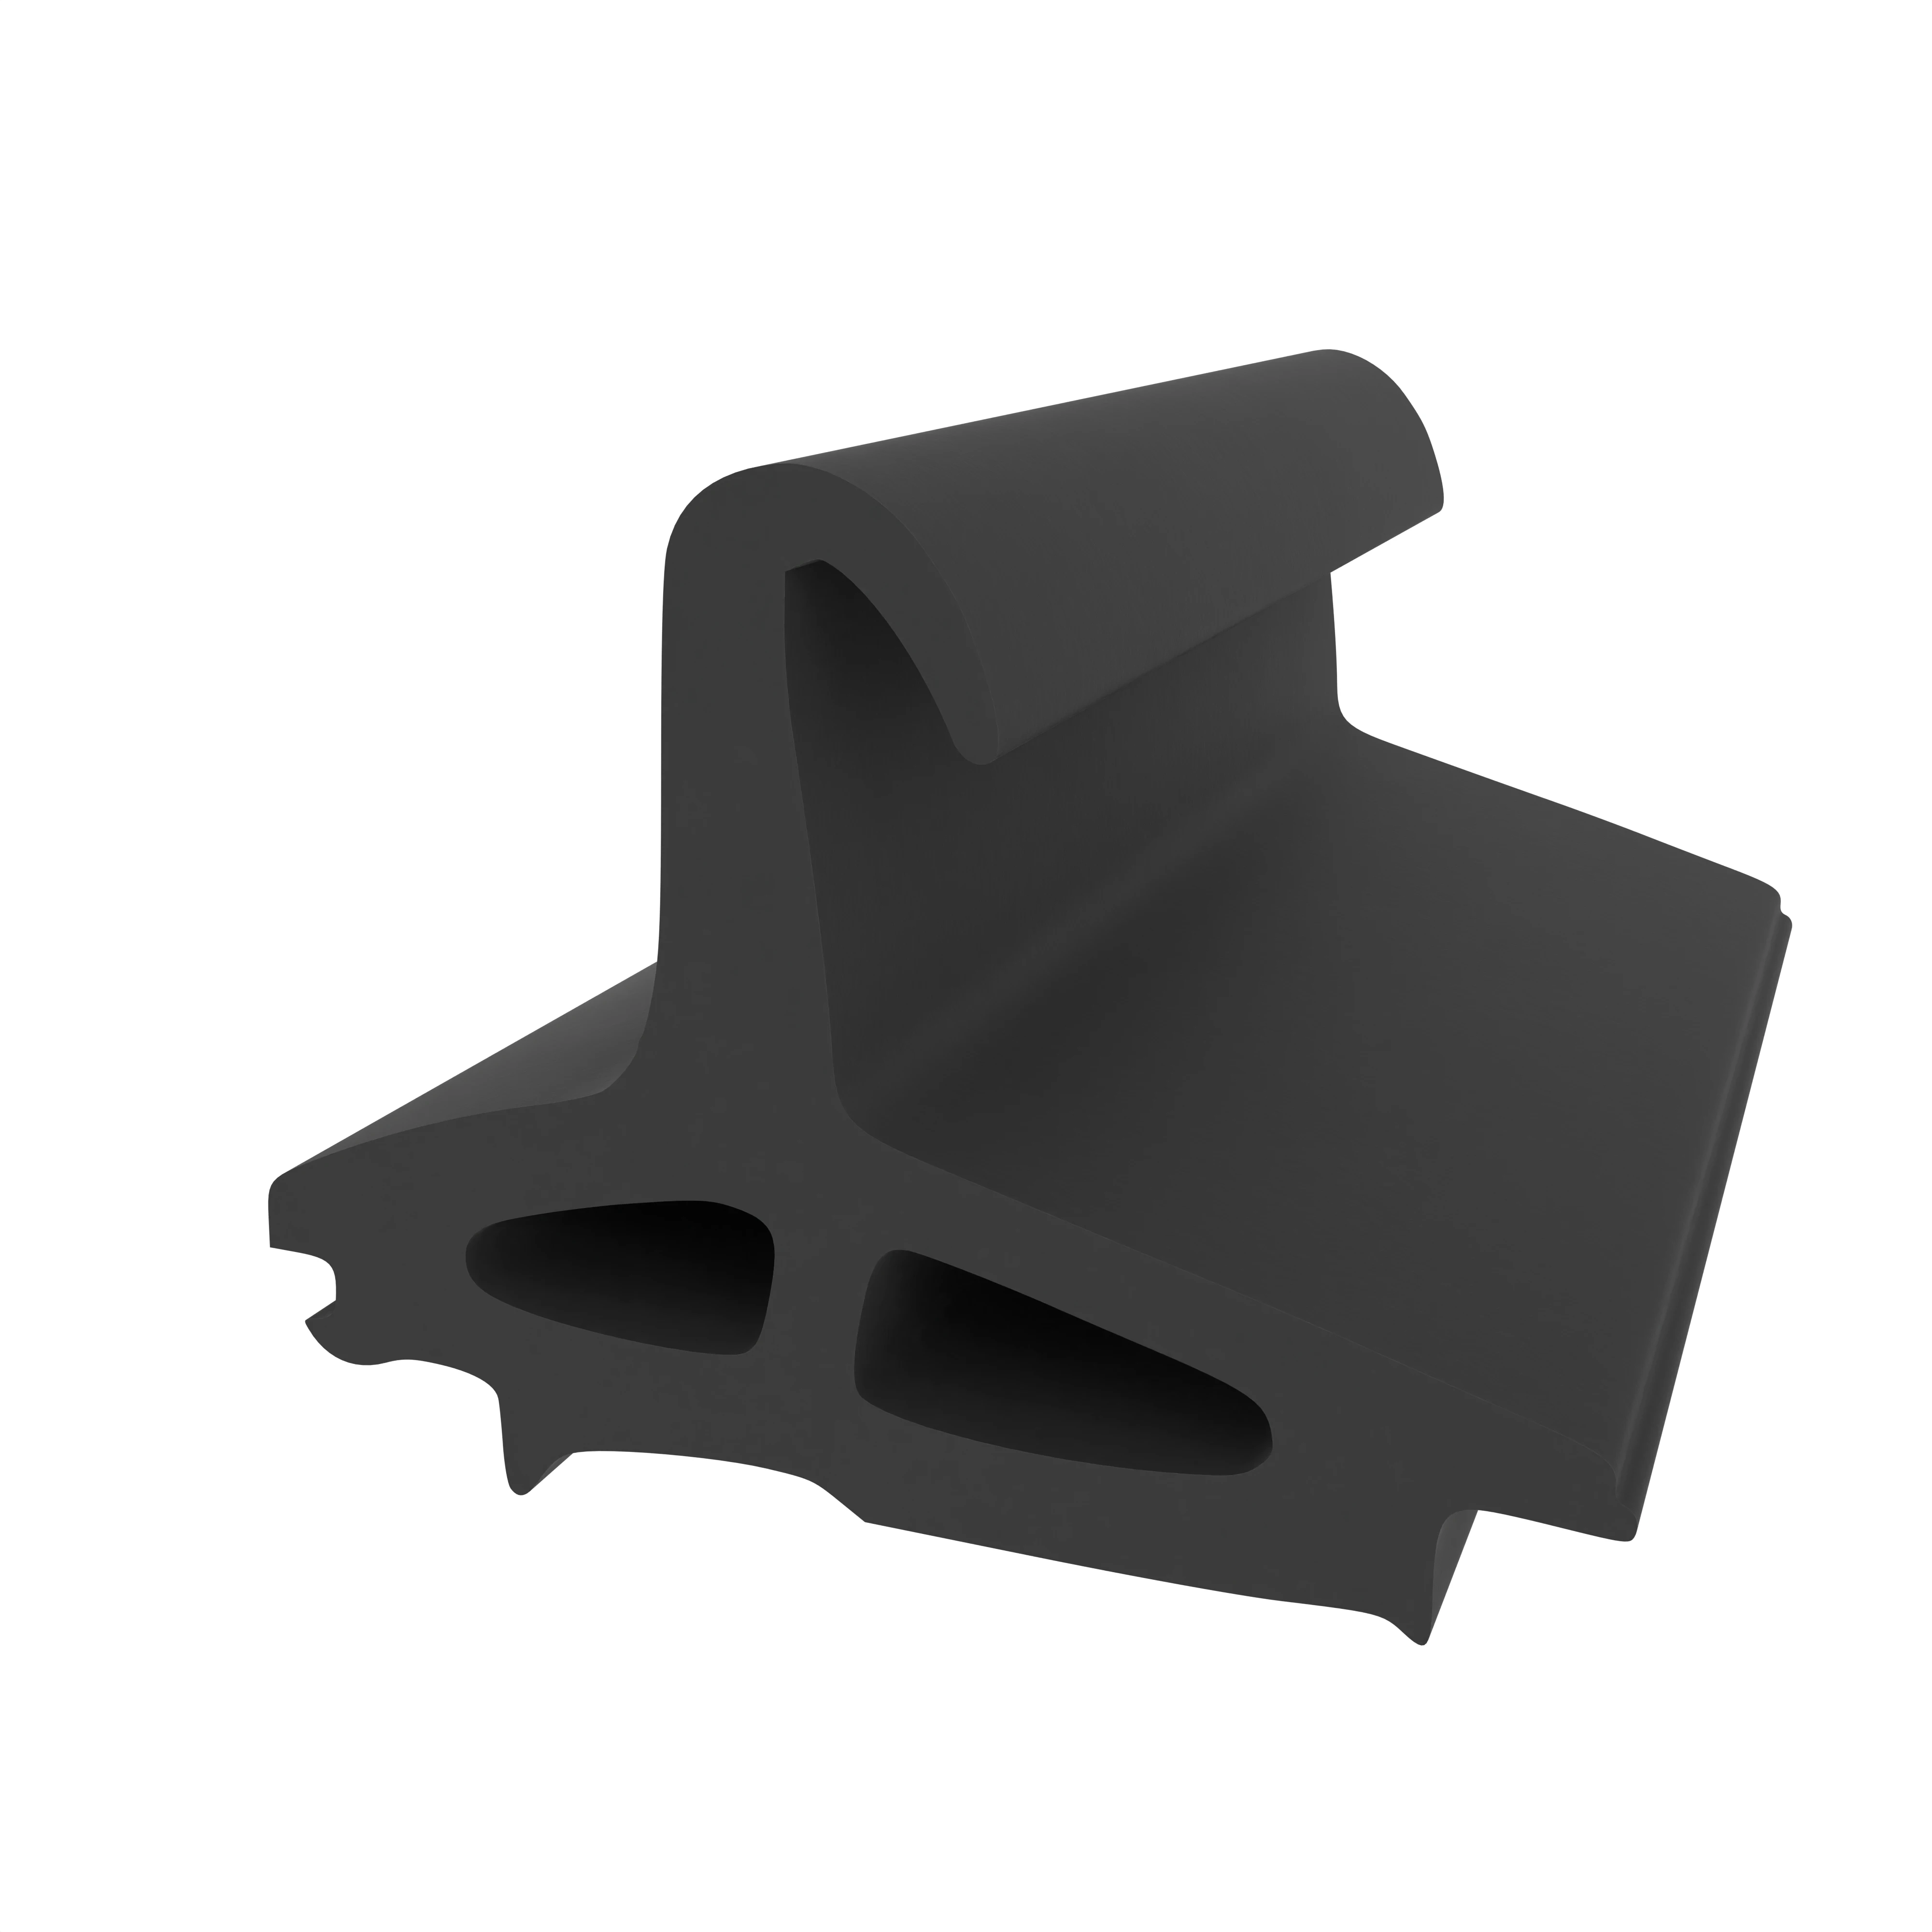 Mitteldichtung für Metall- und Alufenster | 19 mm Höhe | Farbe: schwarz